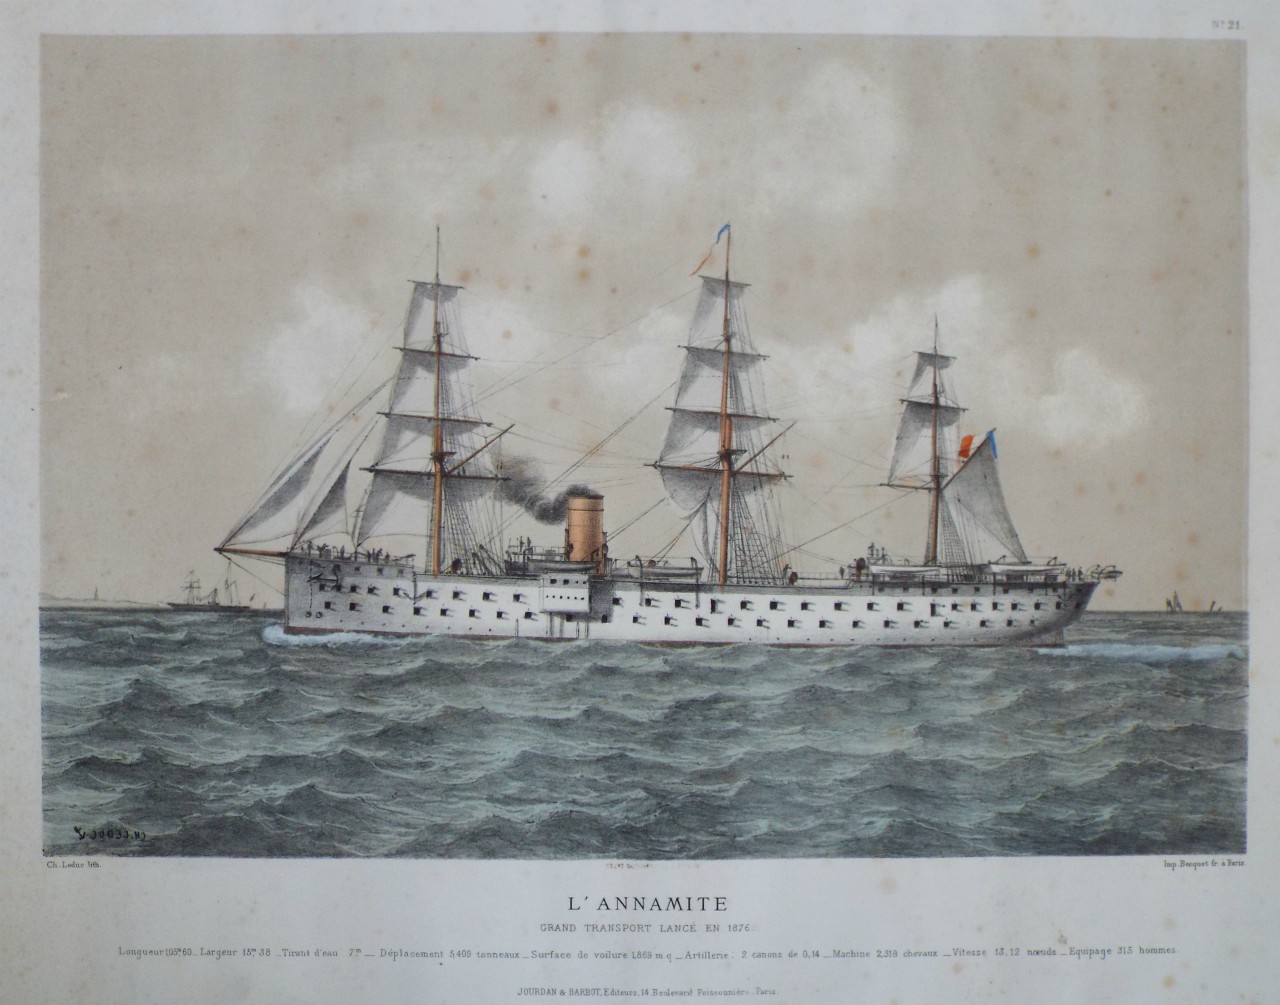 Lithograph - L'Annamite Grand Transport Lance en 1876. - Leduc